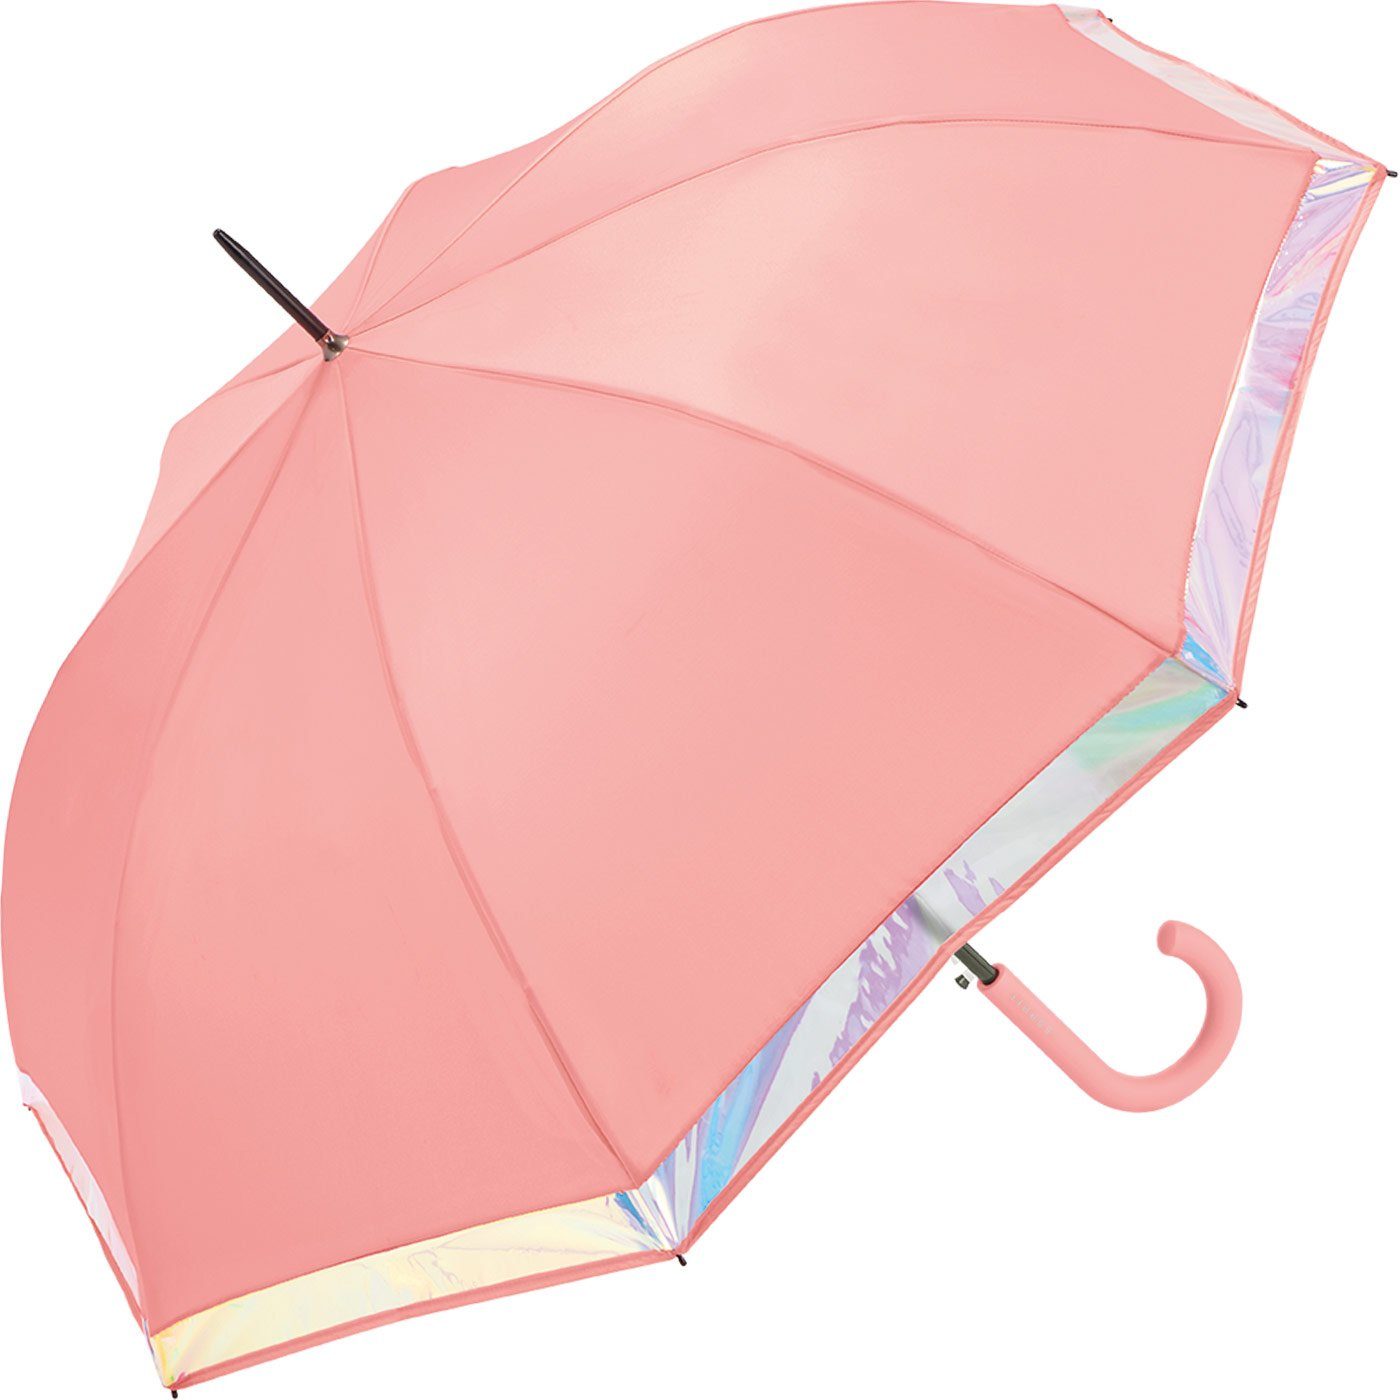 Esprit Langregenschirm mit groß Damen schimmernder Shiny und mit Border, stabil, Borte lachs Regenschirm Automatik